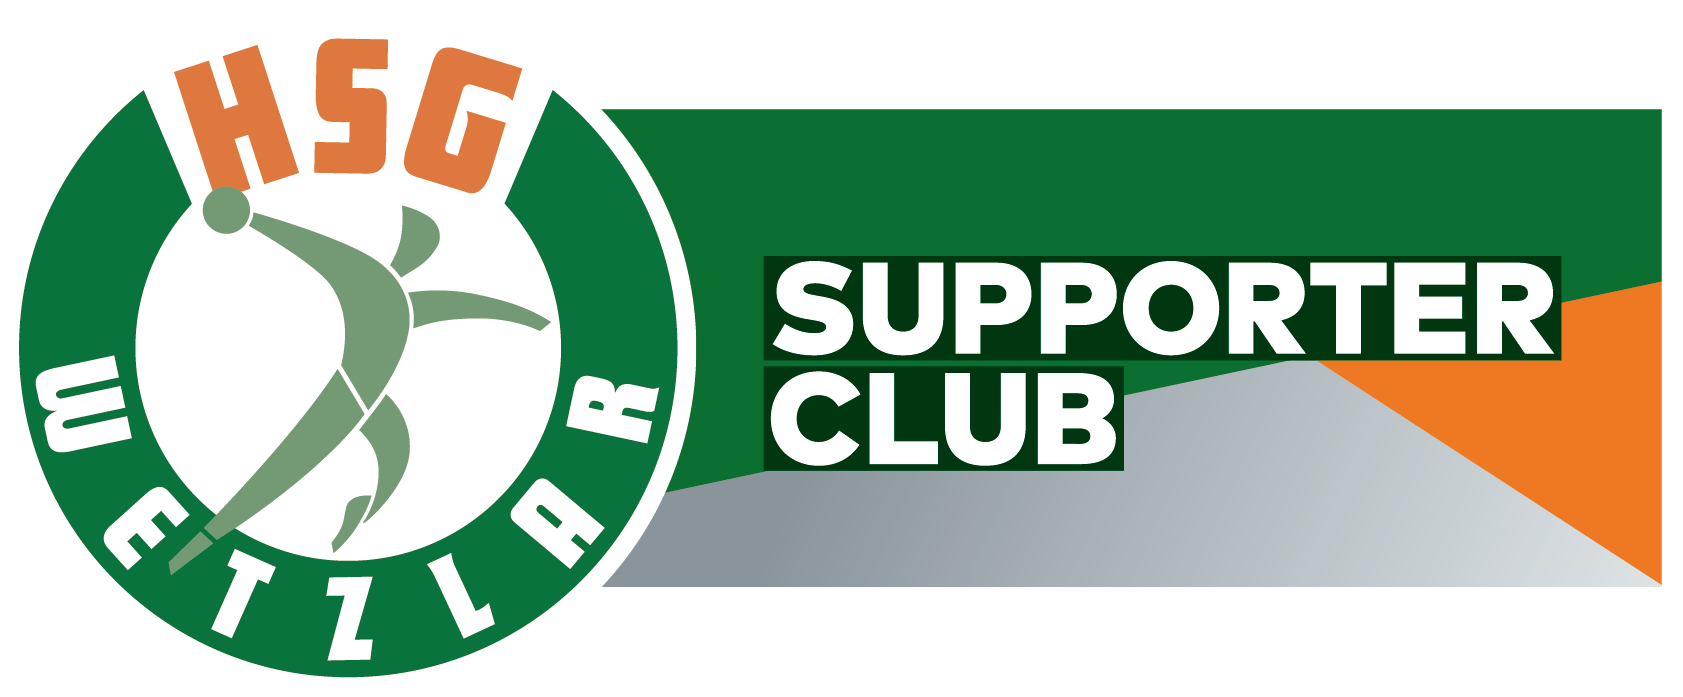 Supporter Club HSG Wetzlar